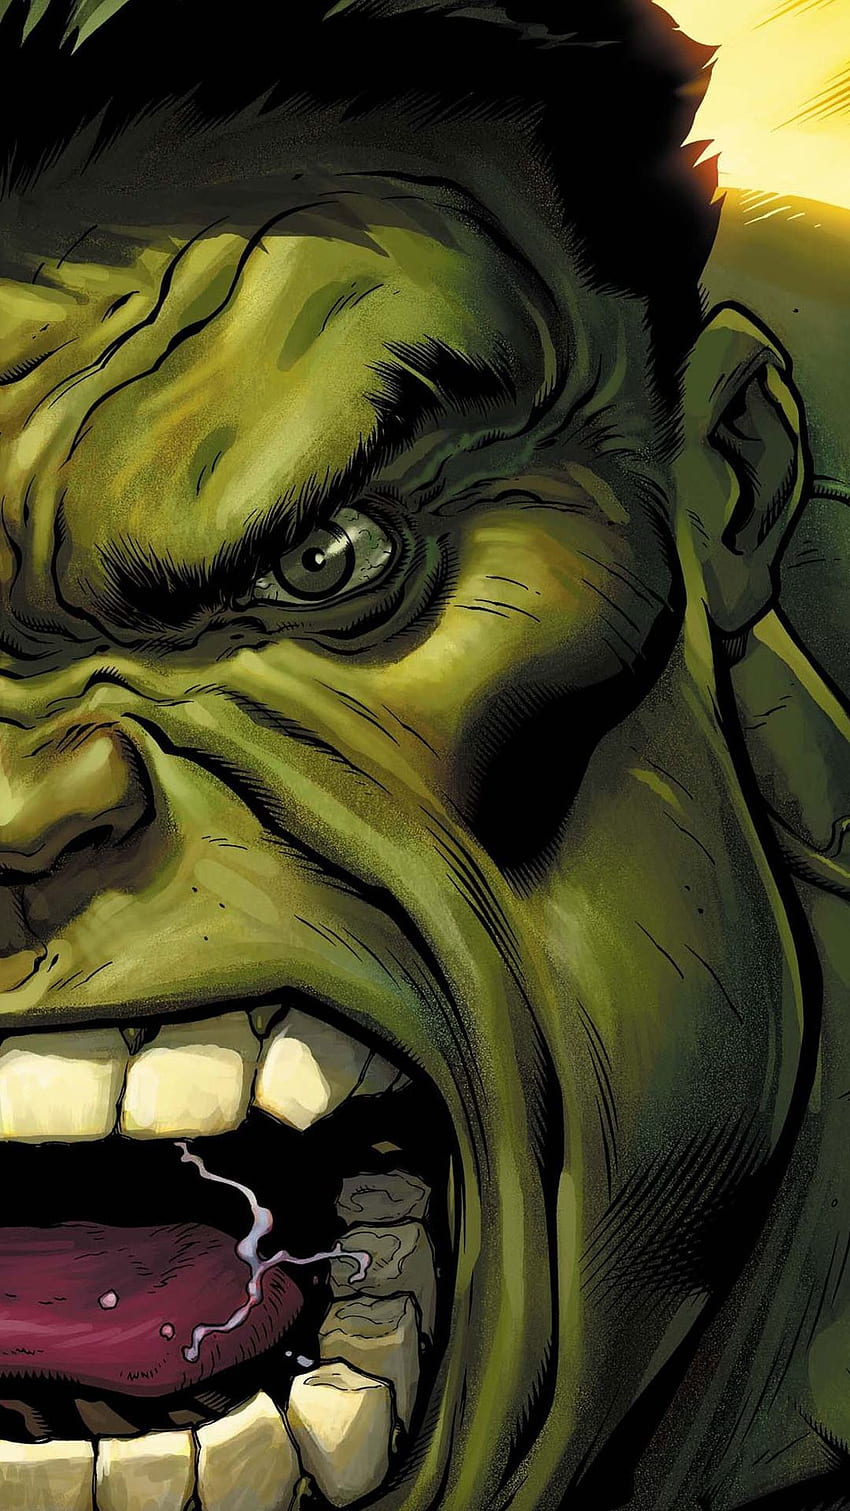 hulk cartoon face